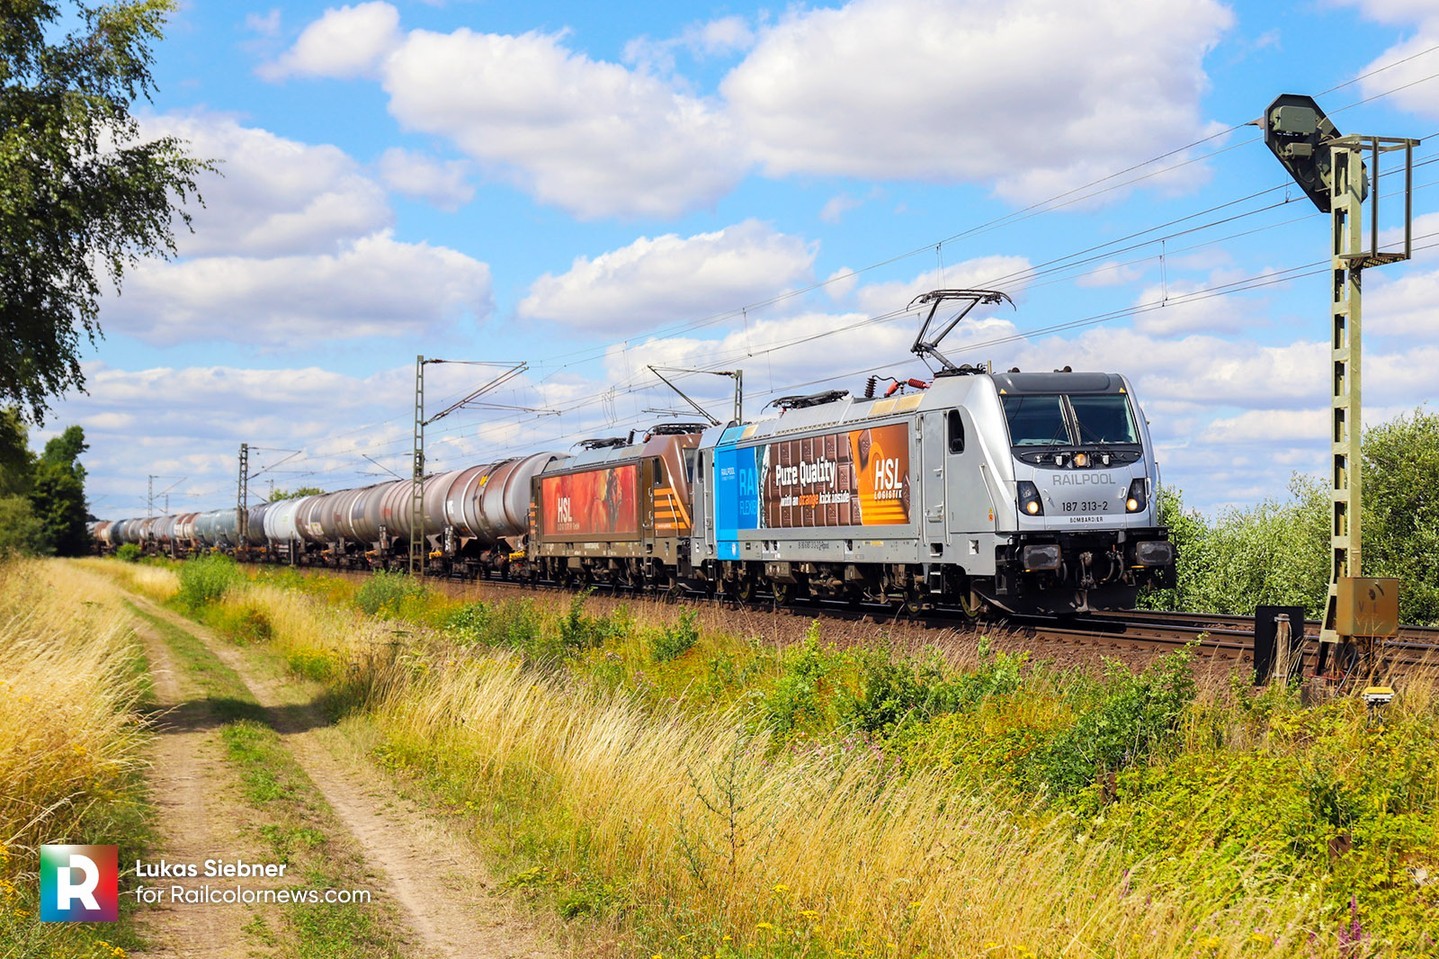 📸 by Lukas Siebner 🇩🇪 Chocoloco! Tasty design for Railpool > HSL Logistik 187 313 ⬆️
.
.
.
.
#railways #railcolornews #railways_of_europe #eisenbahnfotografie #railwayphotography #alstom #traxx #traxxac3 #alstomtraxx #railpool #hsllogistik #railpooltraxx #electriclocomotive #ellok #hsl #trenes #railcolor #zuge #bahn #chocoloco #trains_of_our-world #railways #railcolordesign #logistik #purequality